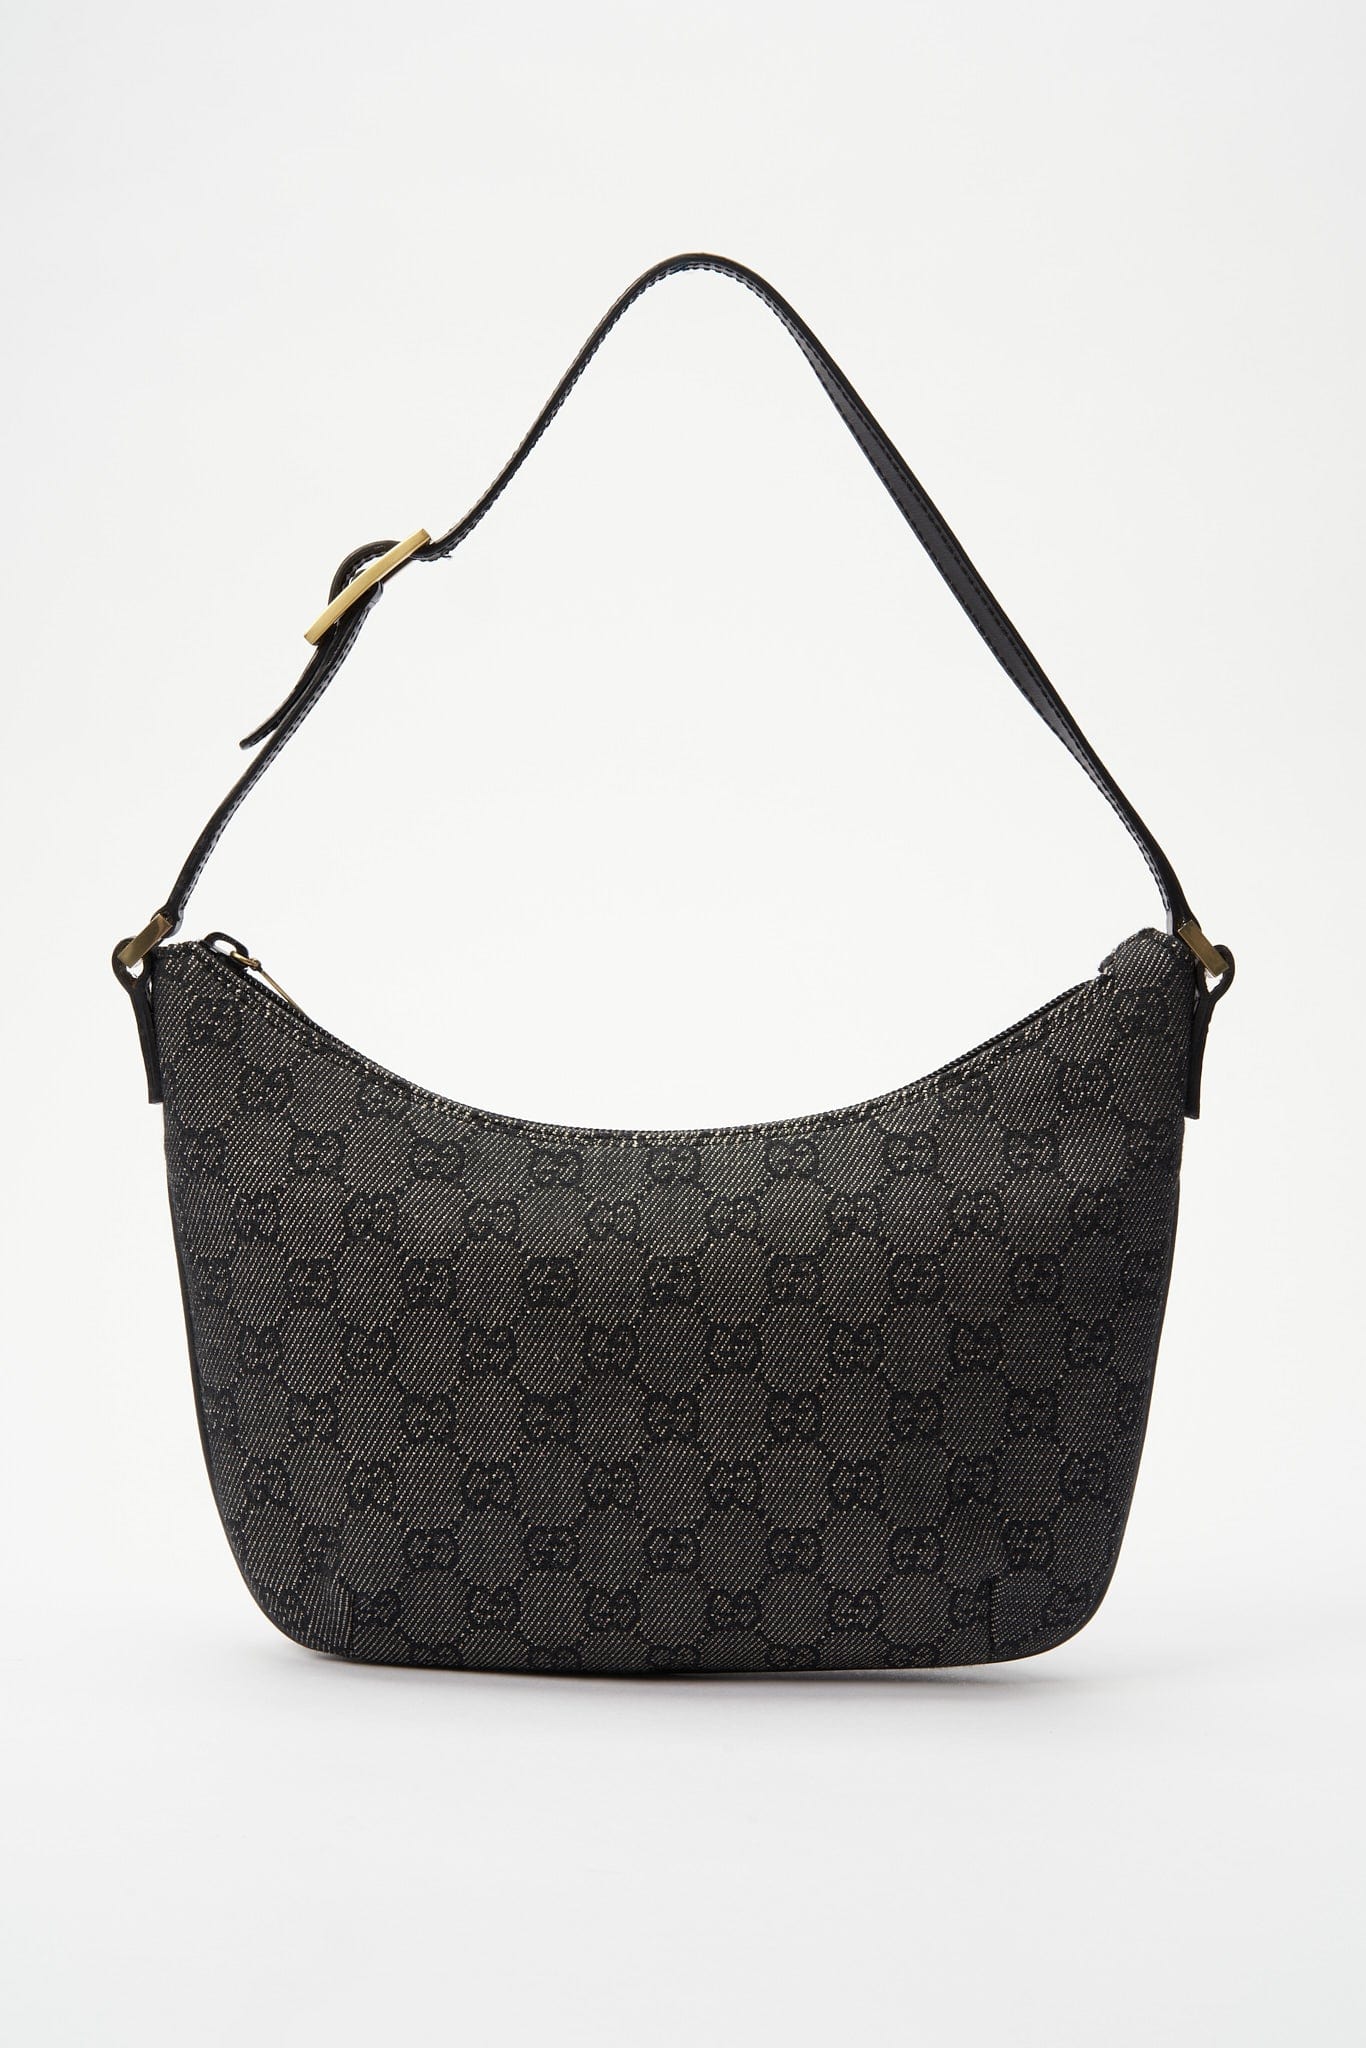 Authentic Gucci GG Pochette Bag